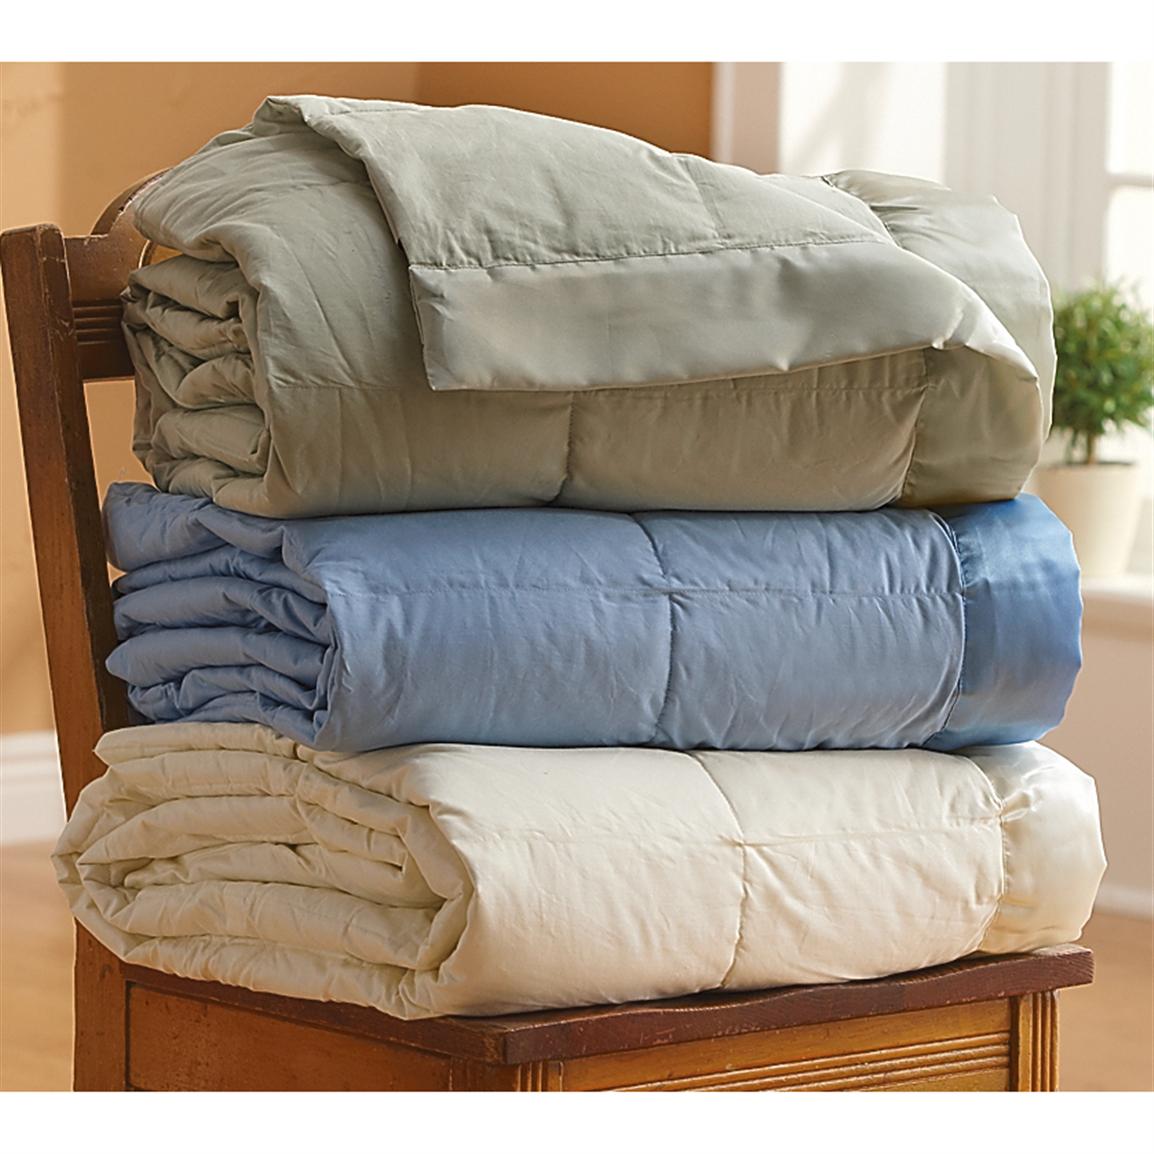 Luxury Down - filled Blanket - 178945, Blankets \u0026 Throws at Sportsman\u0026#39;s Guide